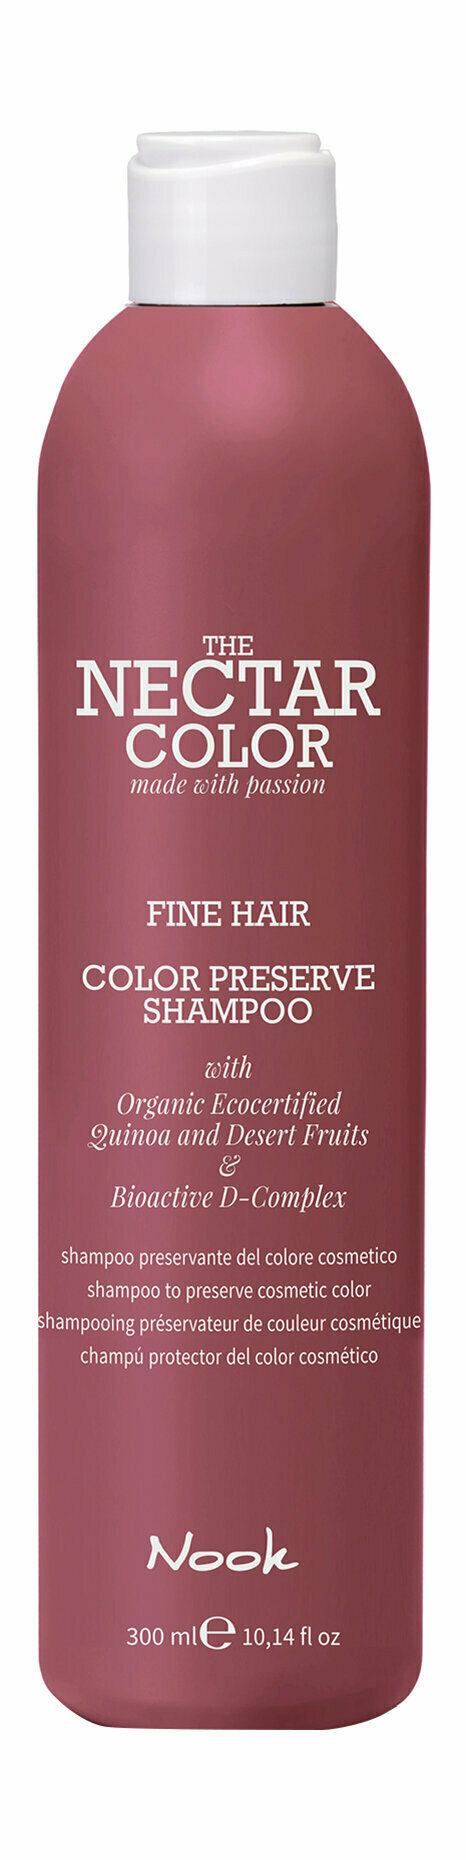 Шампунь для ухода за окрашенными тонкими волосами Nook The Nectar Color Color Preserve Shampoo Fine Hair